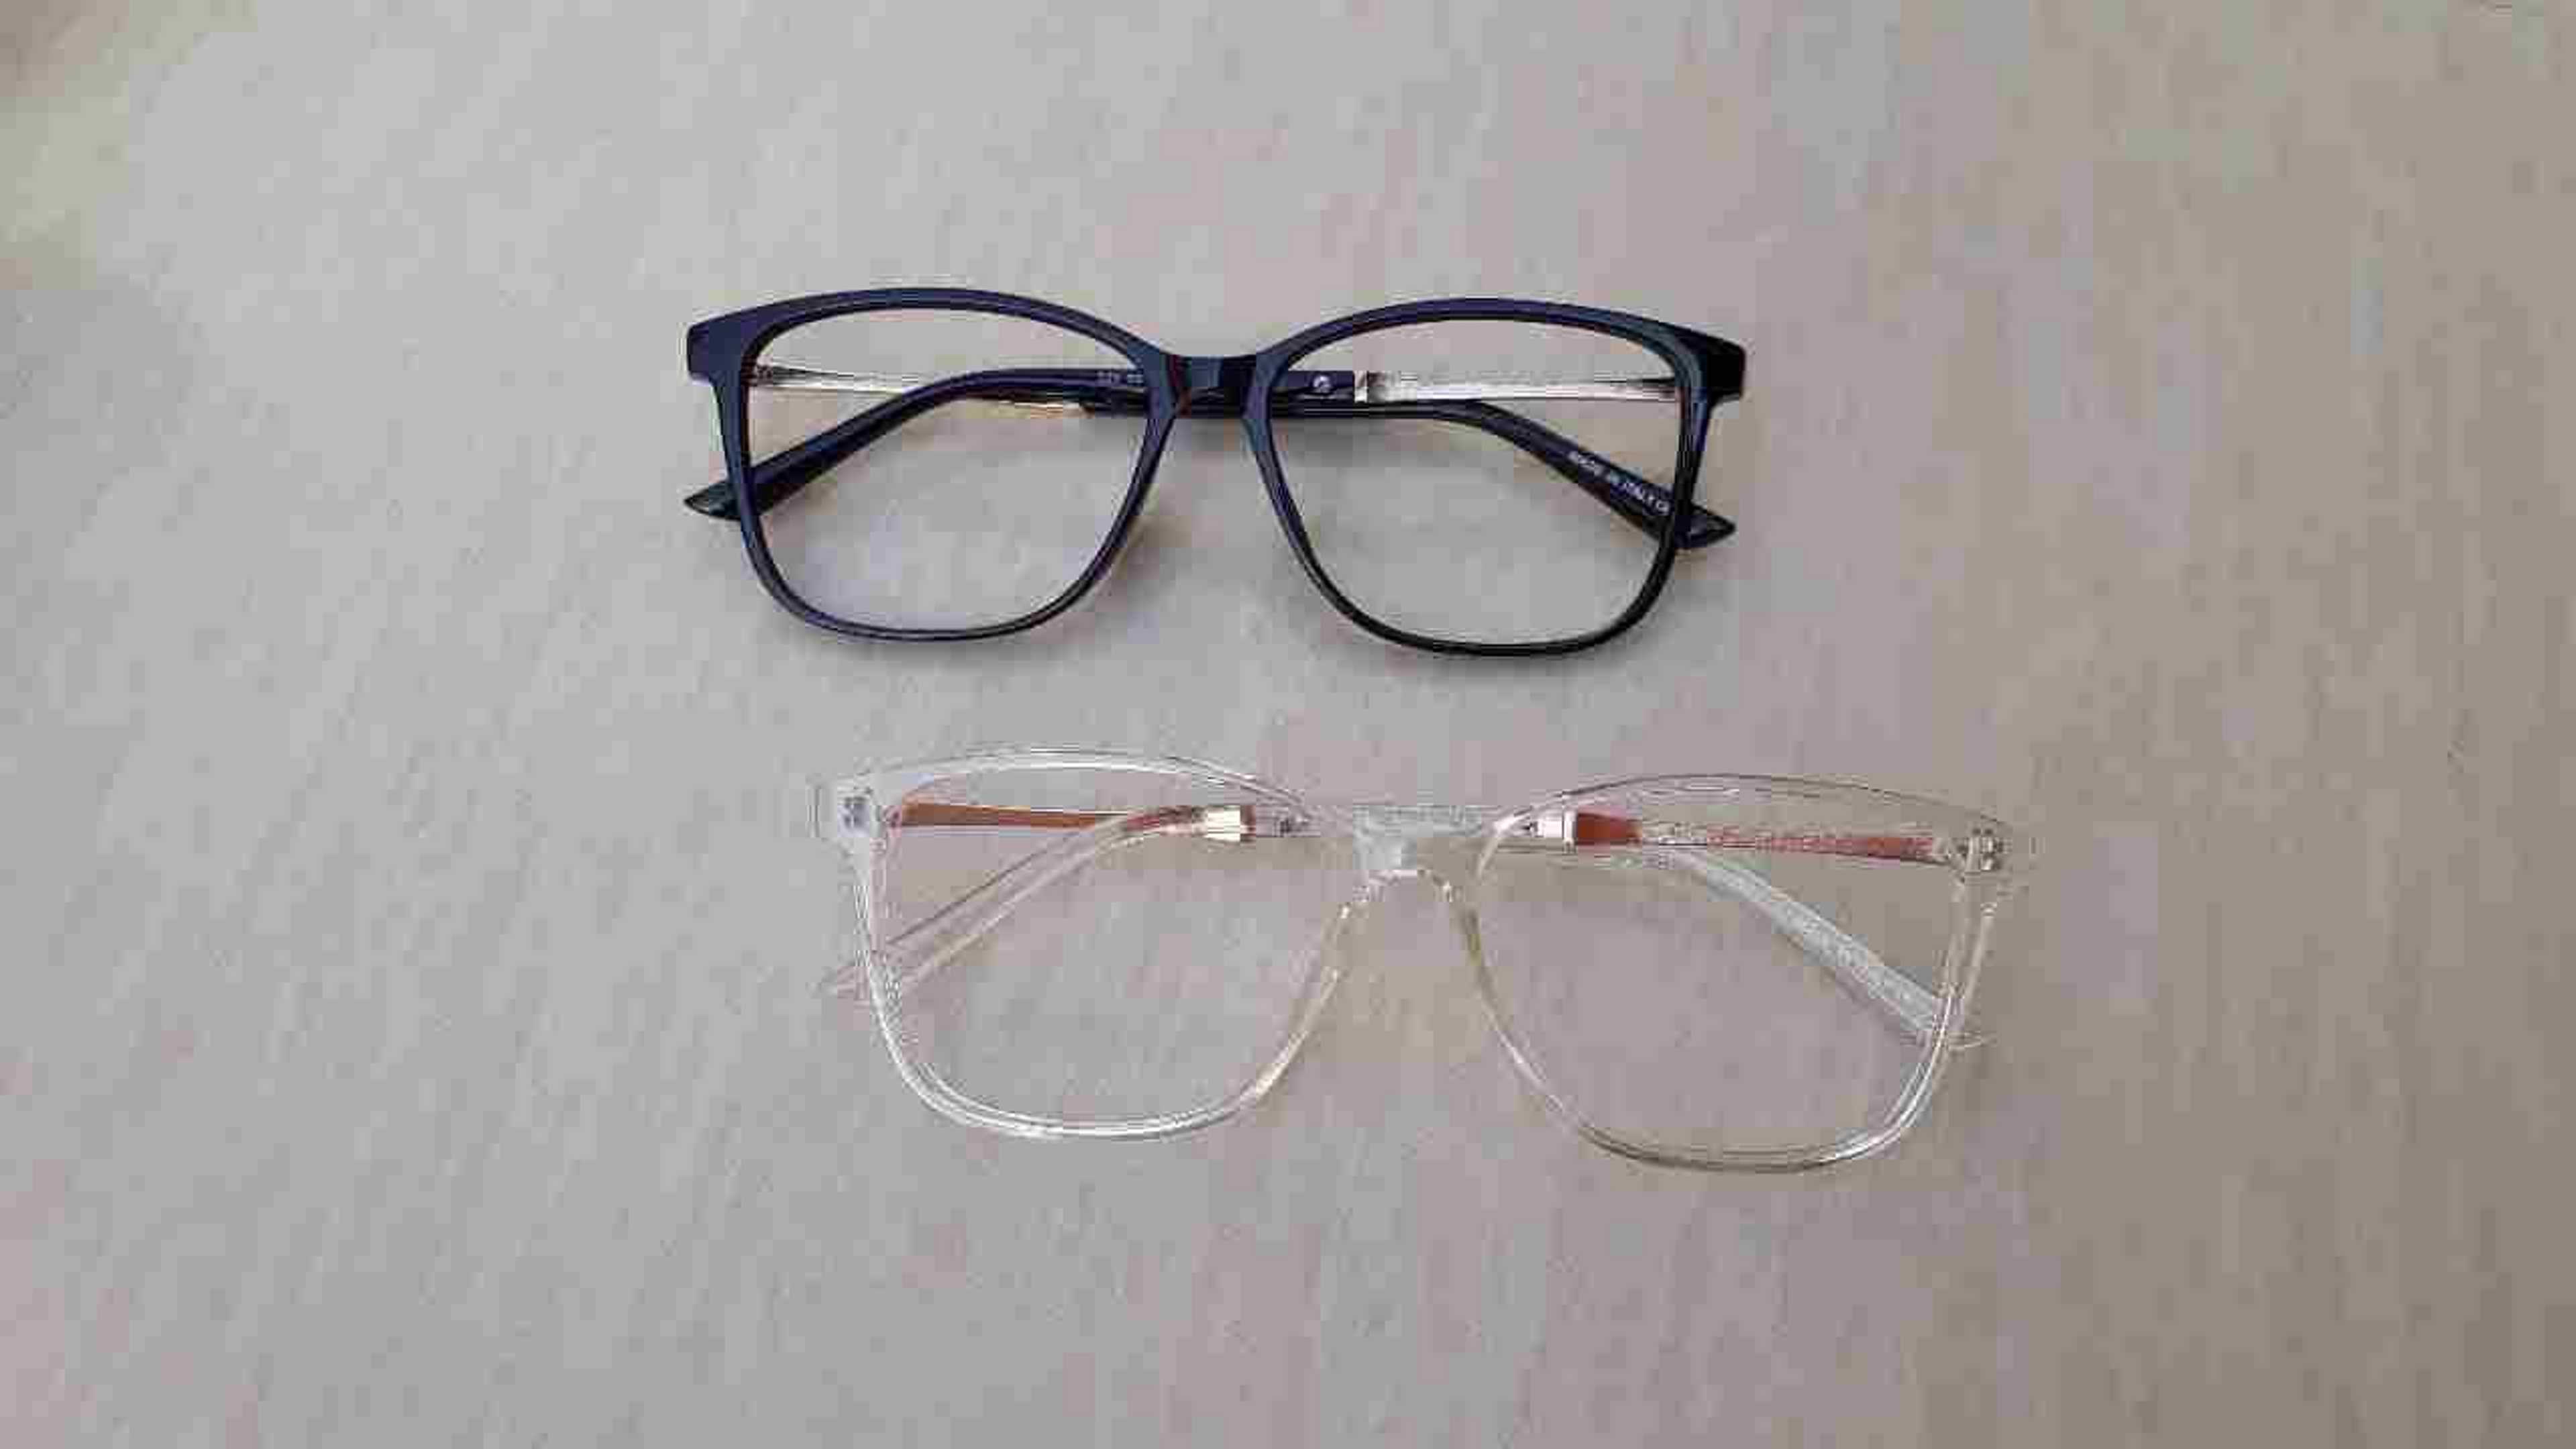 Armani square specs